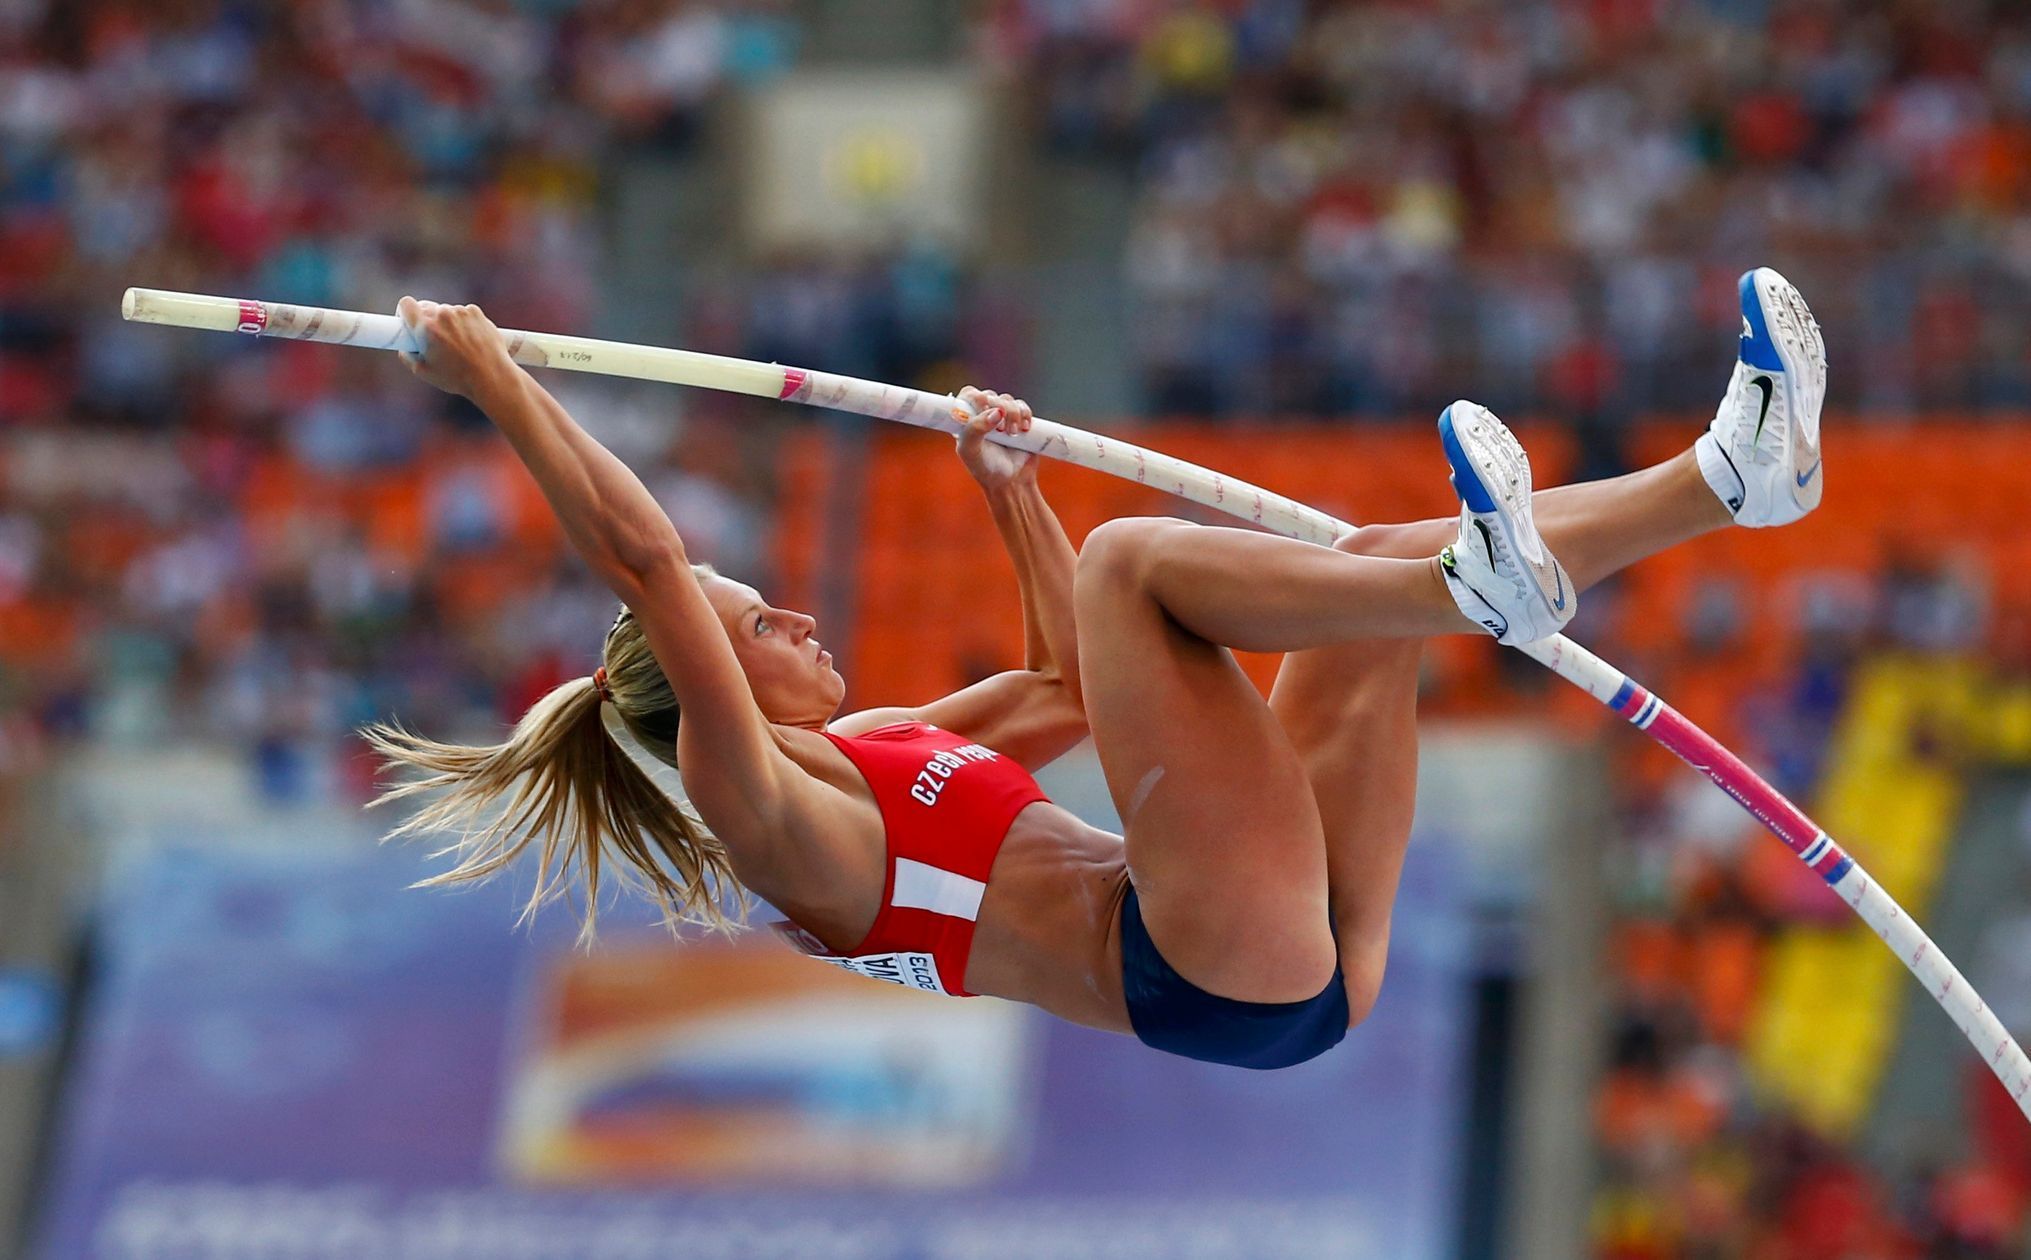 MS v atletice 2013, tyčka žen - finále: Jiřina Svobodová